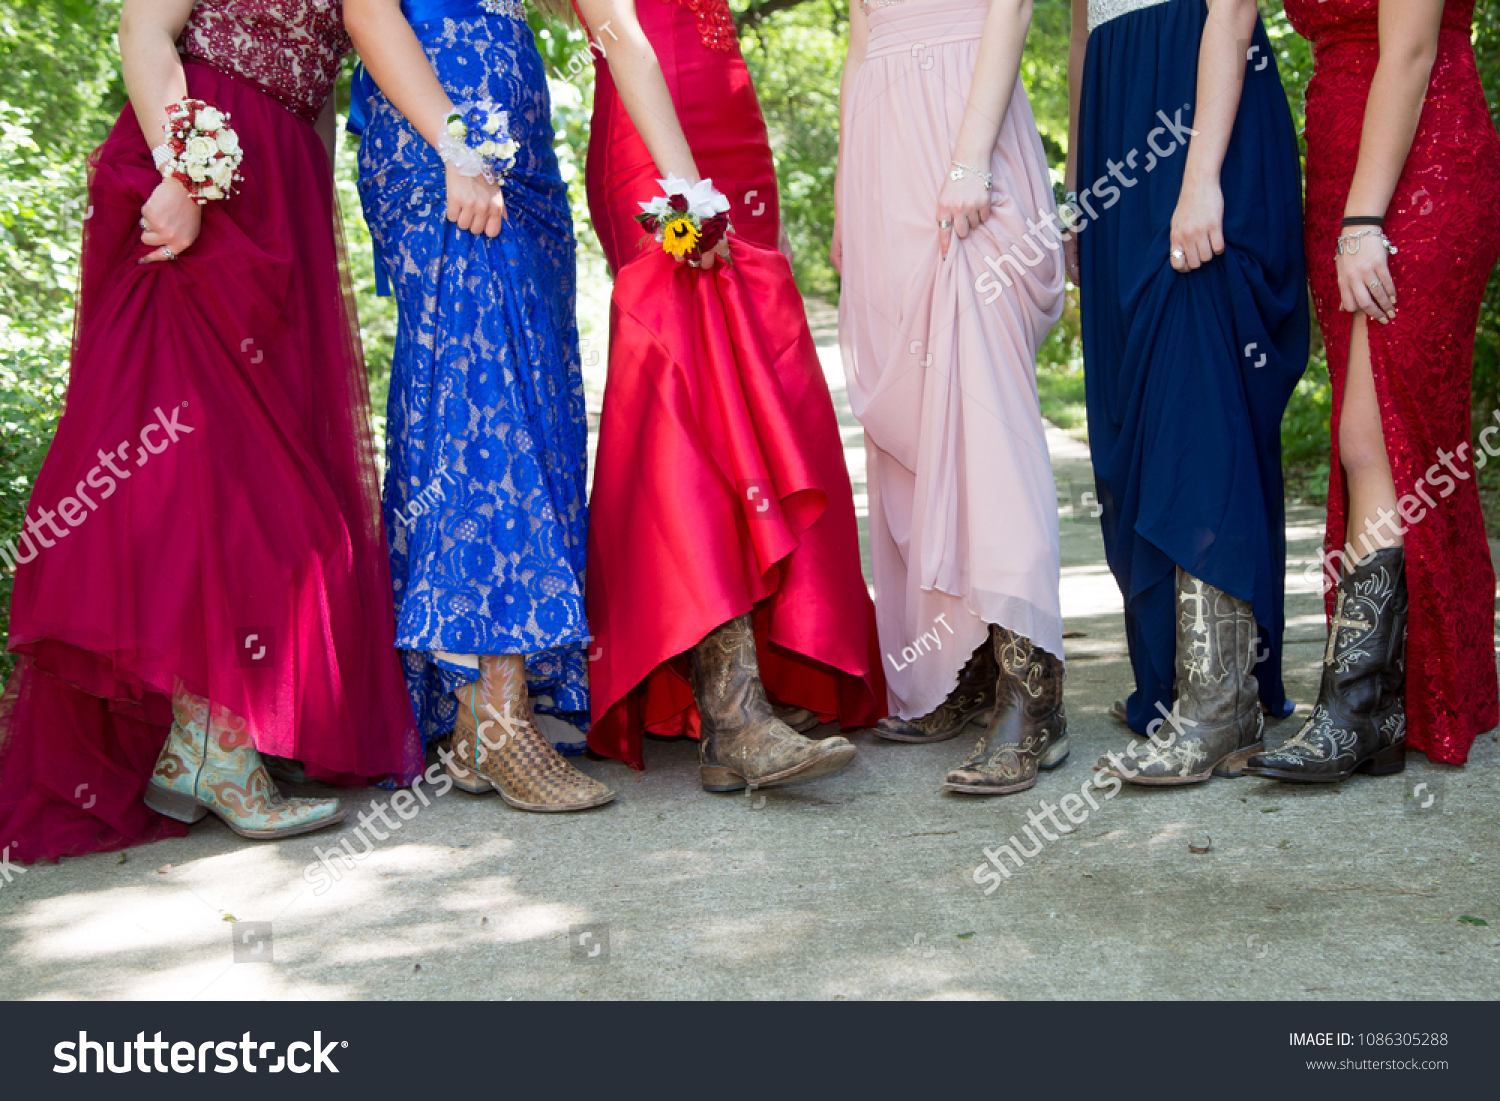 Prom Dresses Cowboy Boots Foto de stock ...